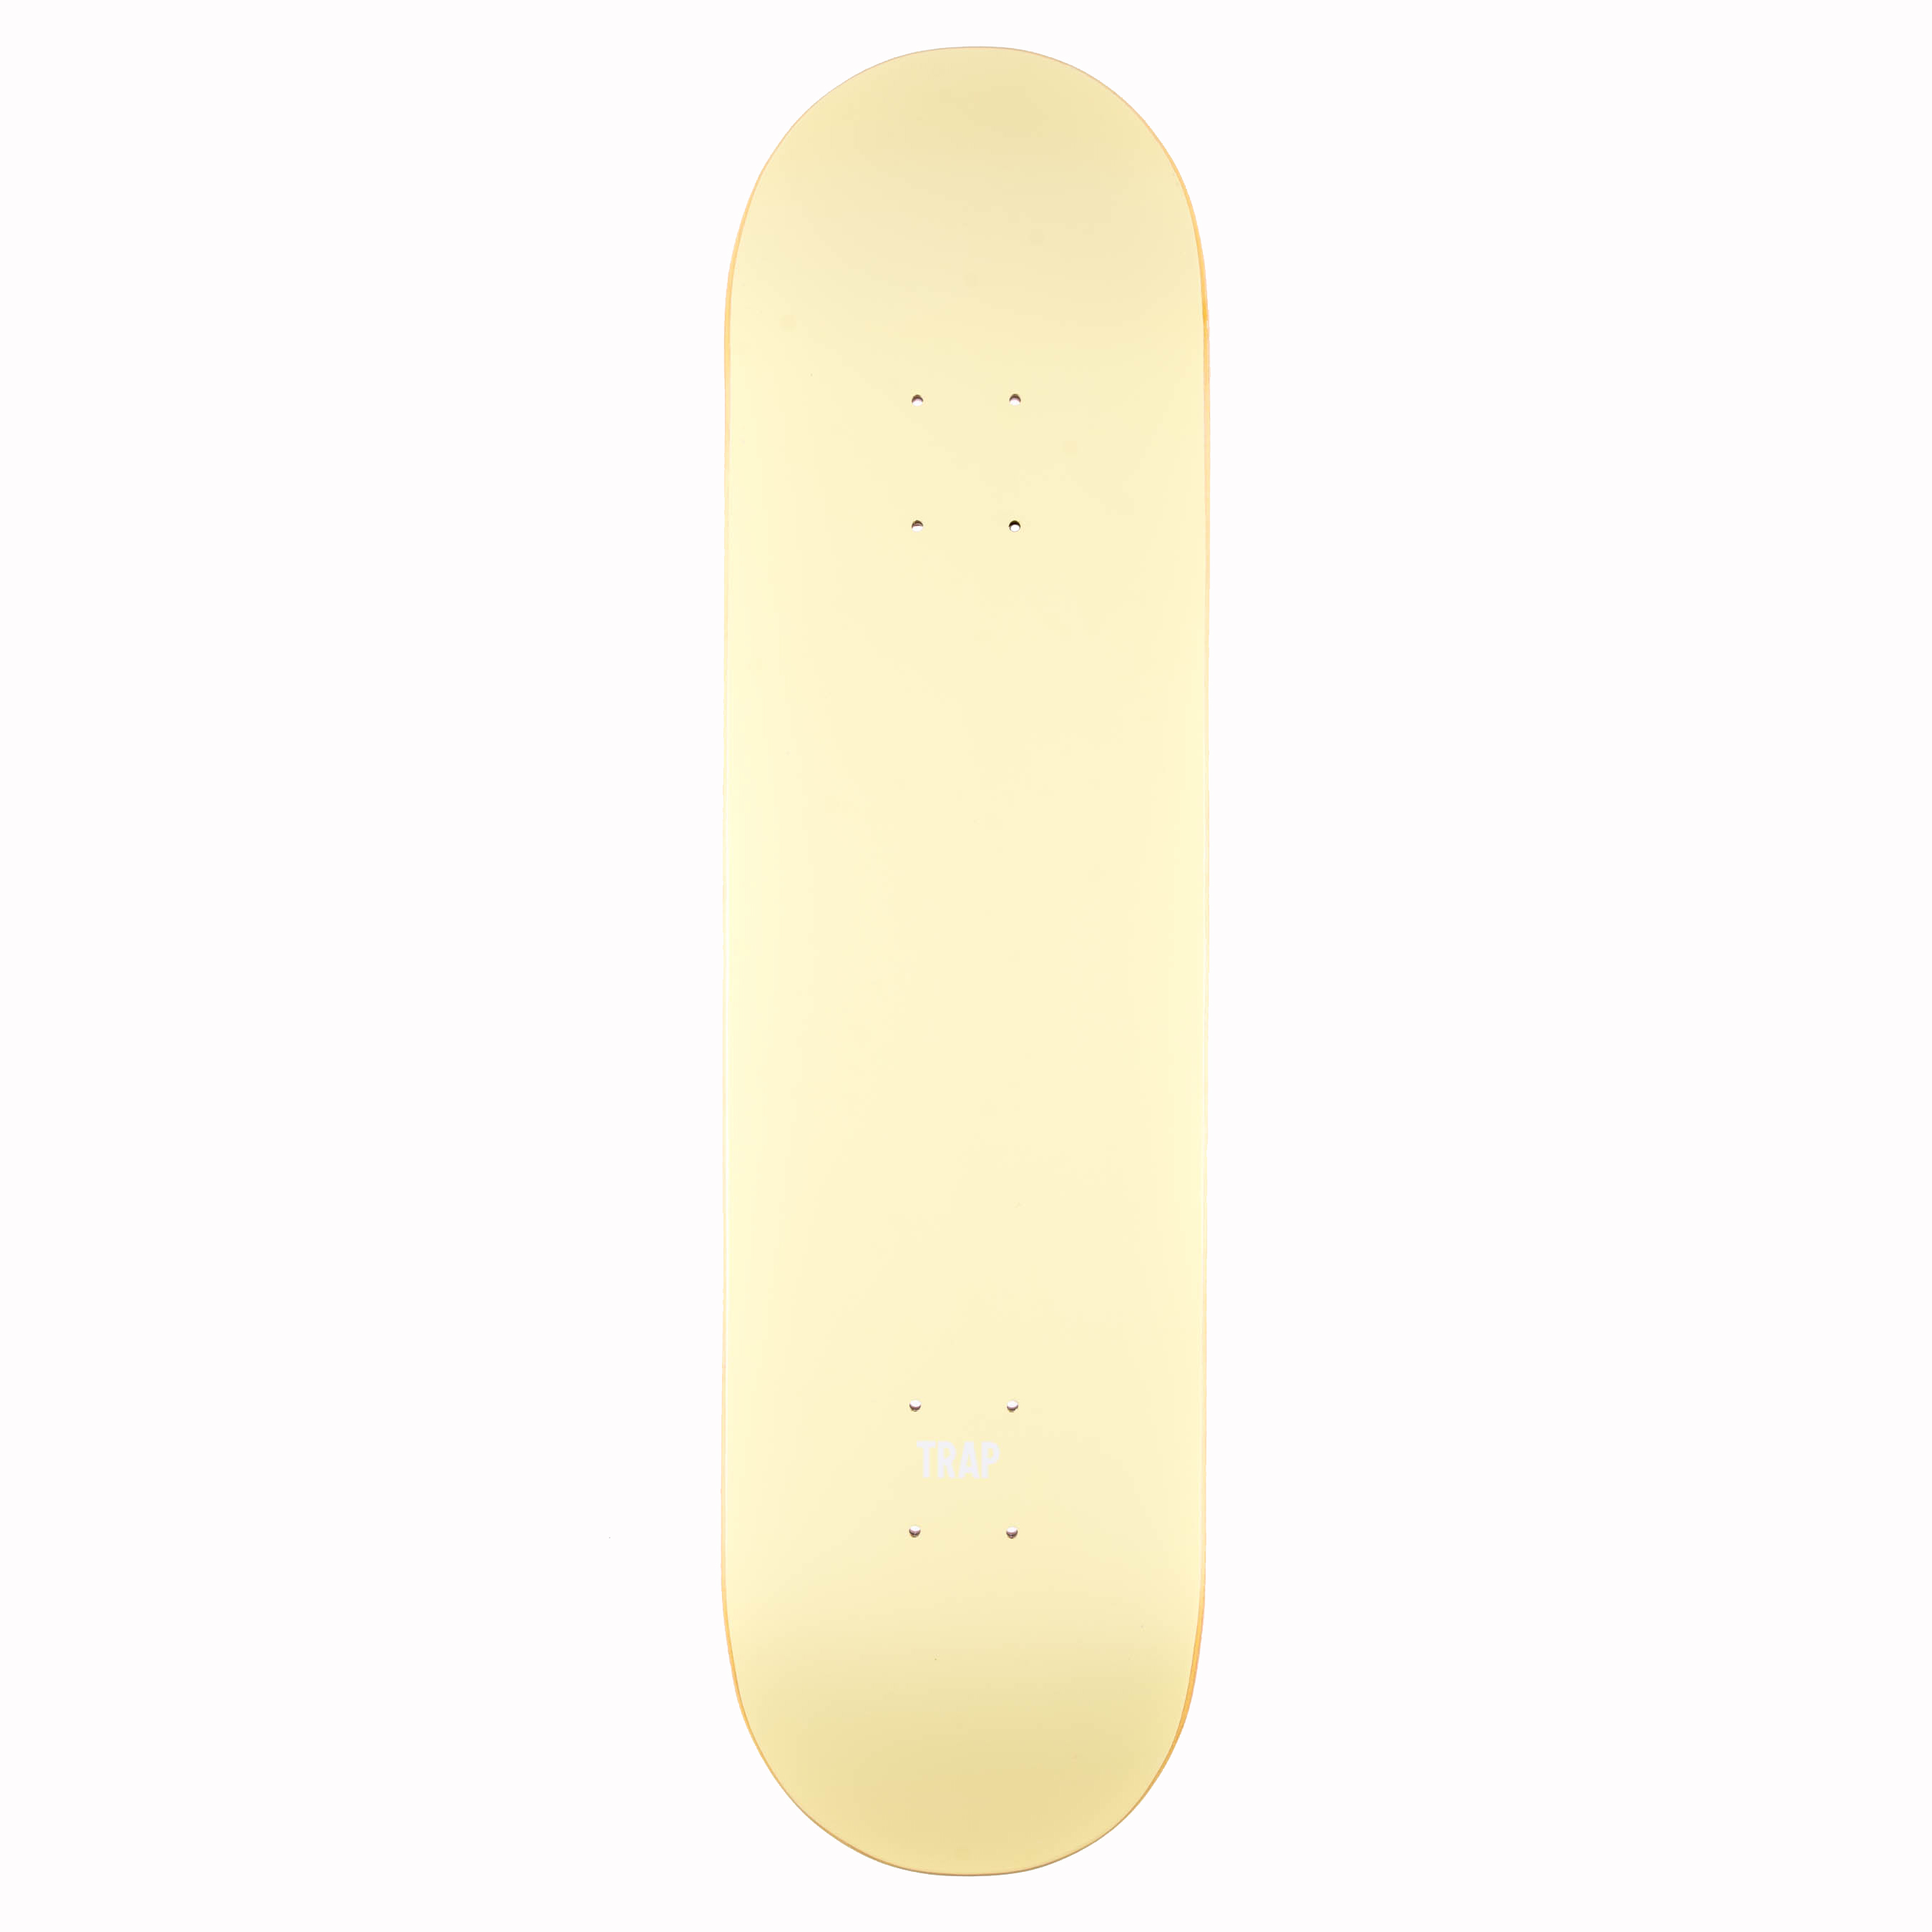 Trap Skateboard Deck Monochrome Series 8.0" (yellow)